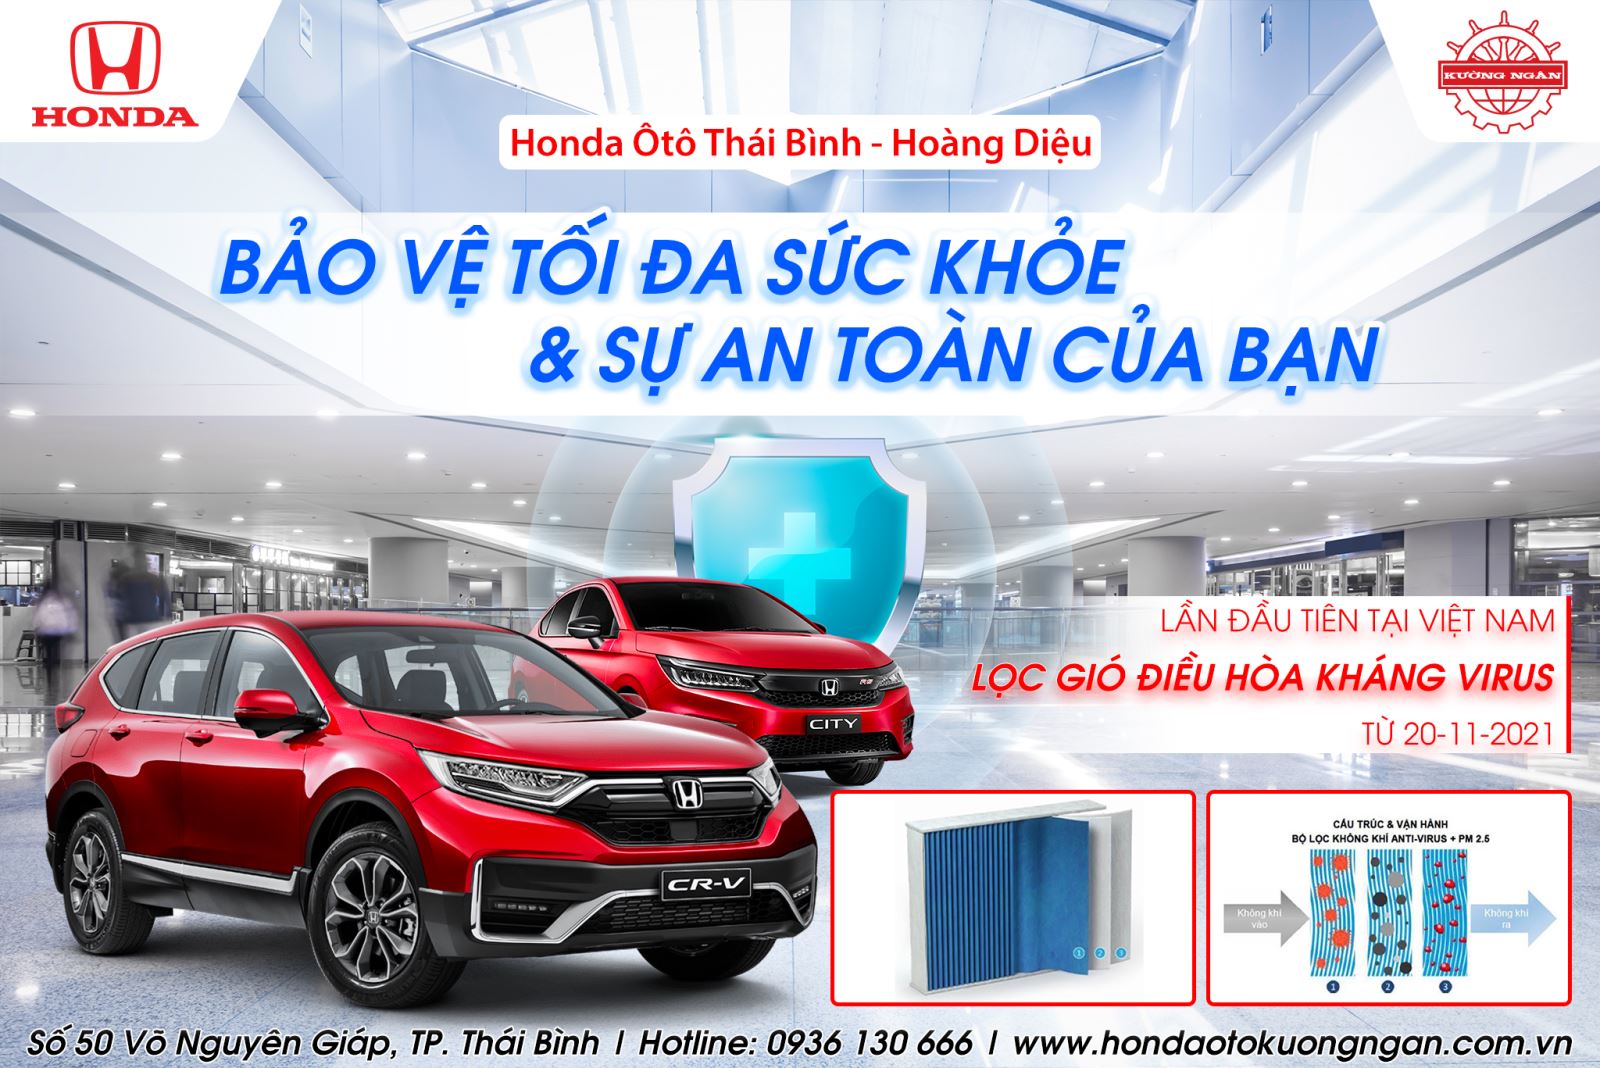 Honda Việt Nam lần đầu tiên giới thiệu sản phẩm lọc gió điều hòa kháng vi rút cho xe ô tô